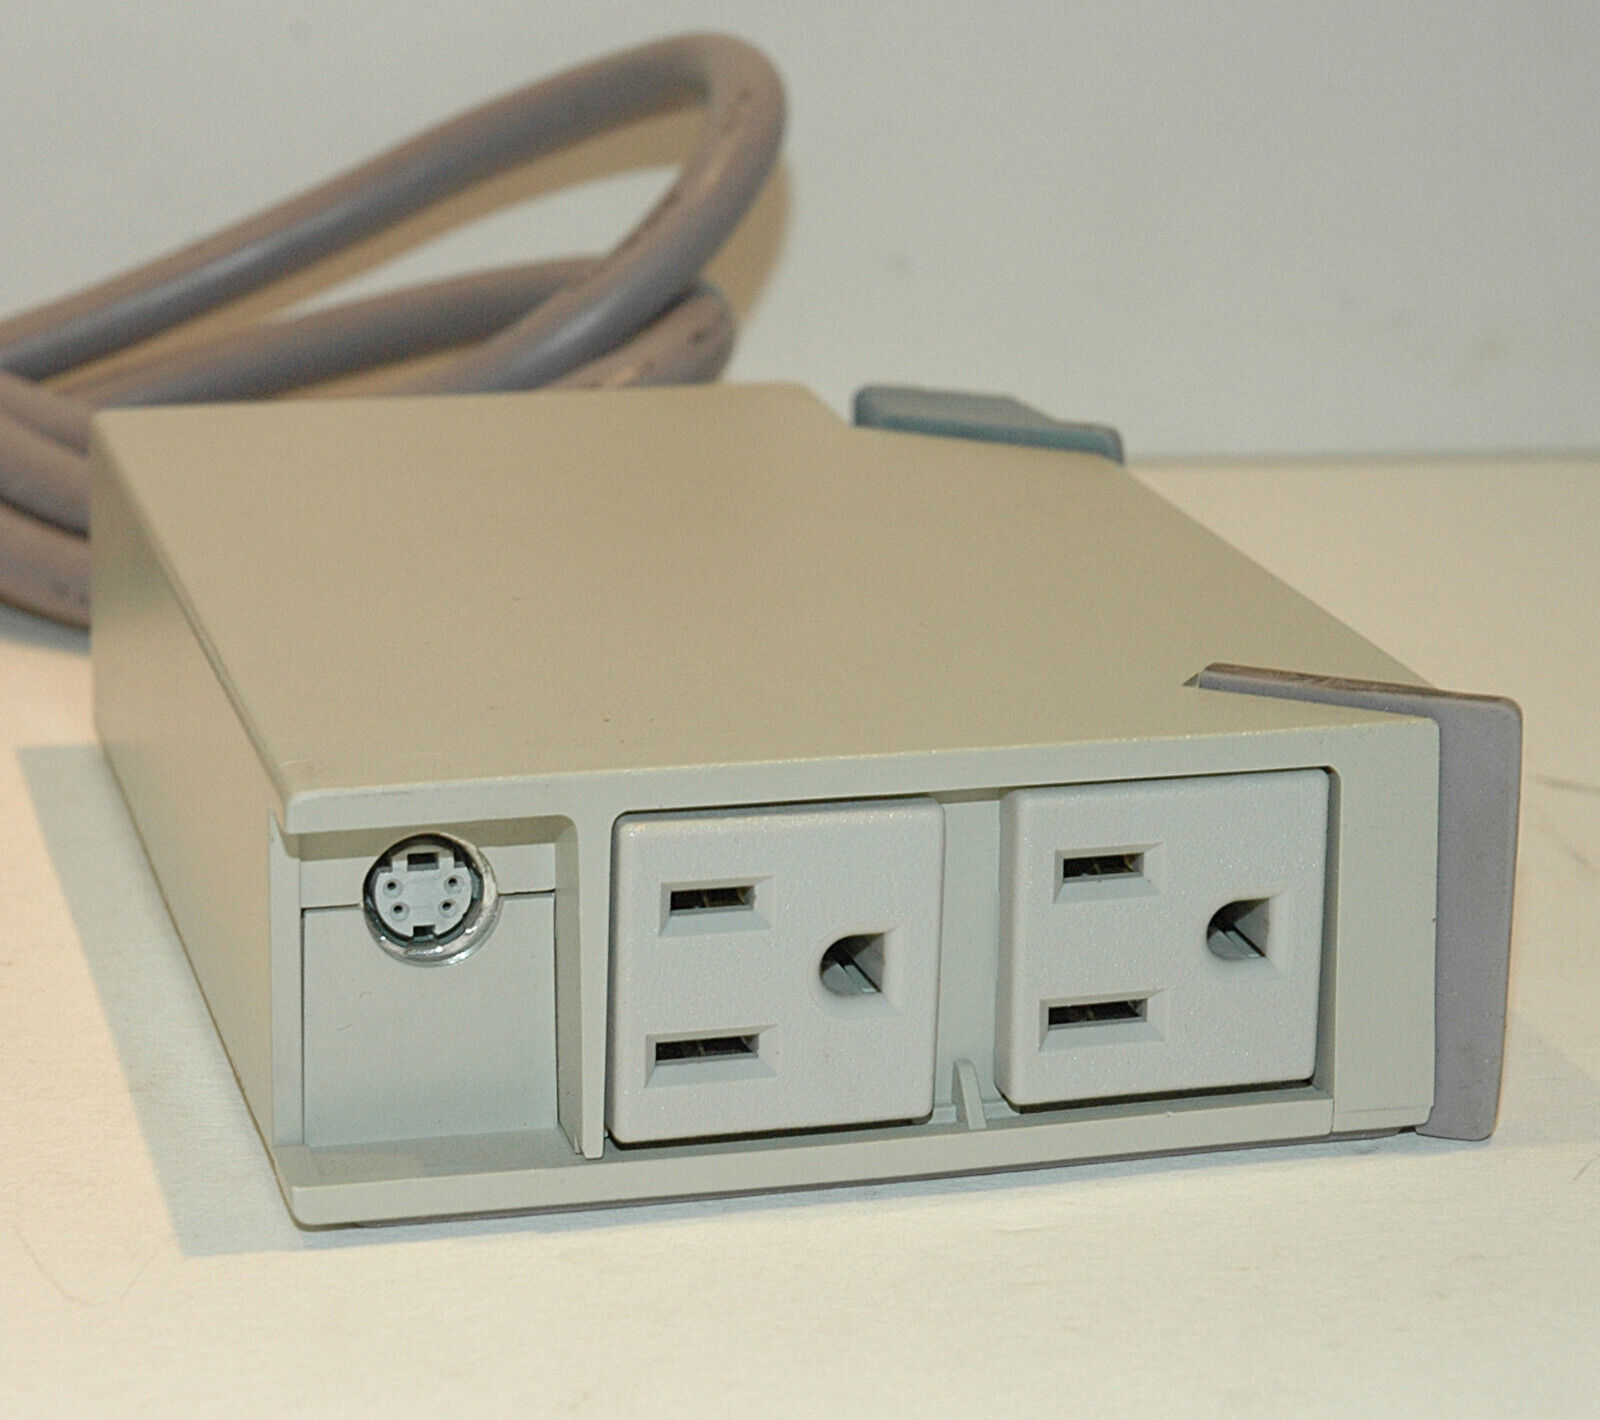 Rare Vintage PowerKey PK-1 Power Control Center for vintage Apple ADB Macintosh